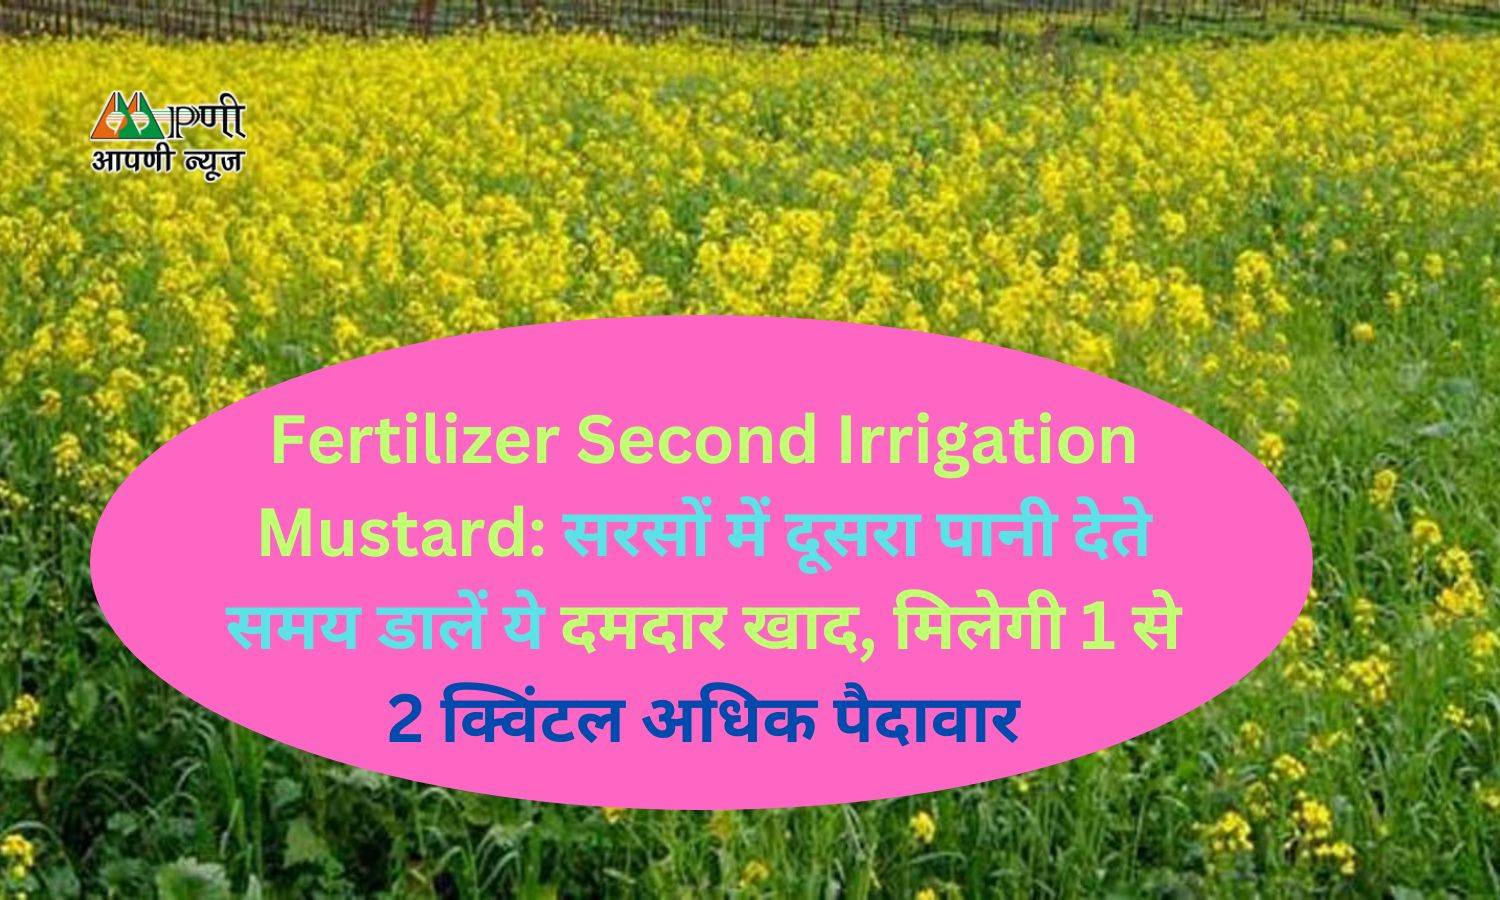 Fertilizer Second Irrigation Mustard: सरसों में दूसरा पानी देते समय डालें ये दमदार खाद, मिलेगी 1 से 2 क्विंटल अधिक पैदावार